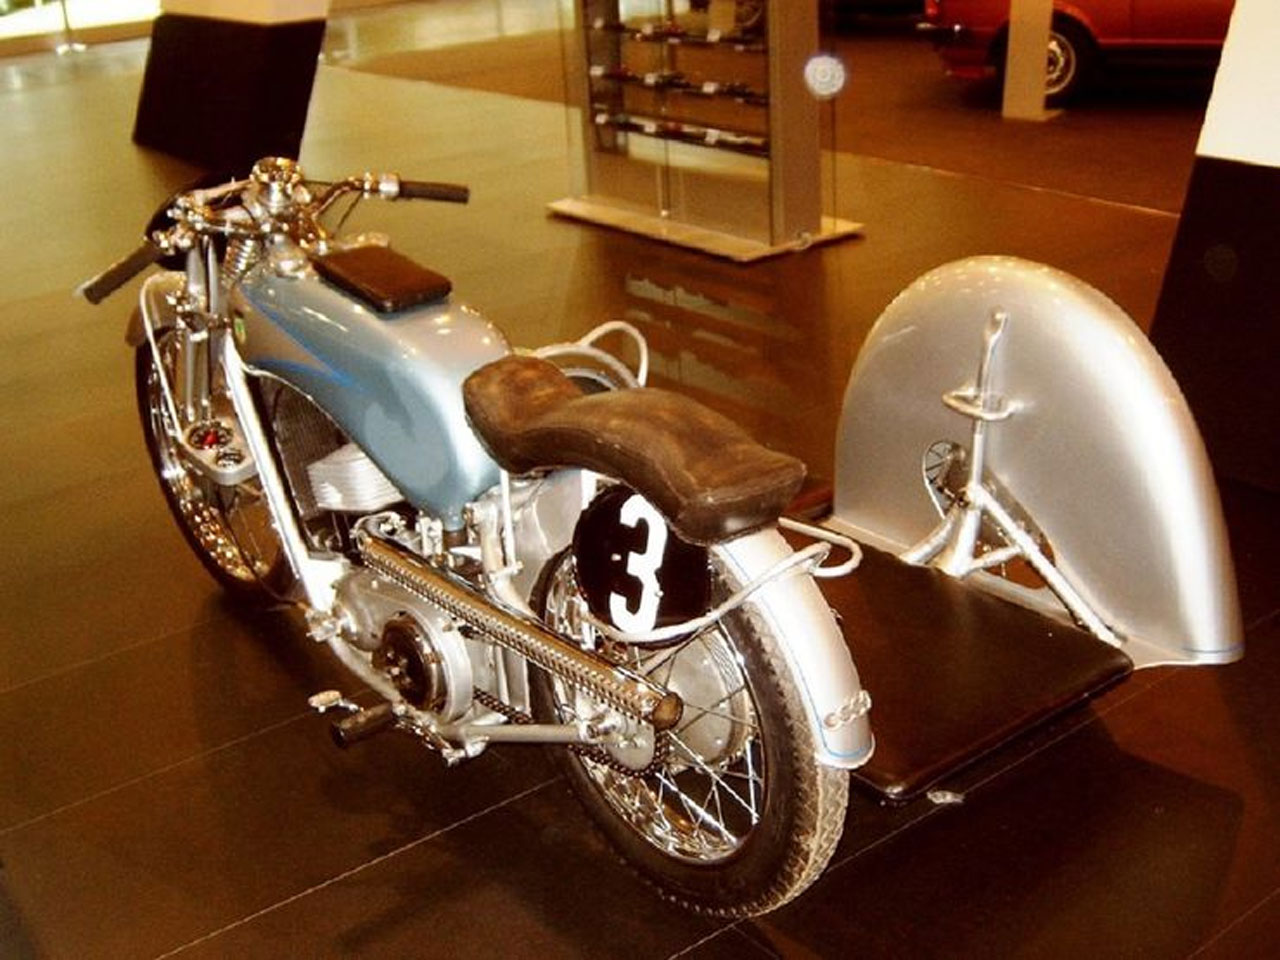 Chiêm ngưỡng 16 chiếc xe máy đầu tiên ra đời trên thế giới - Ảnh 15